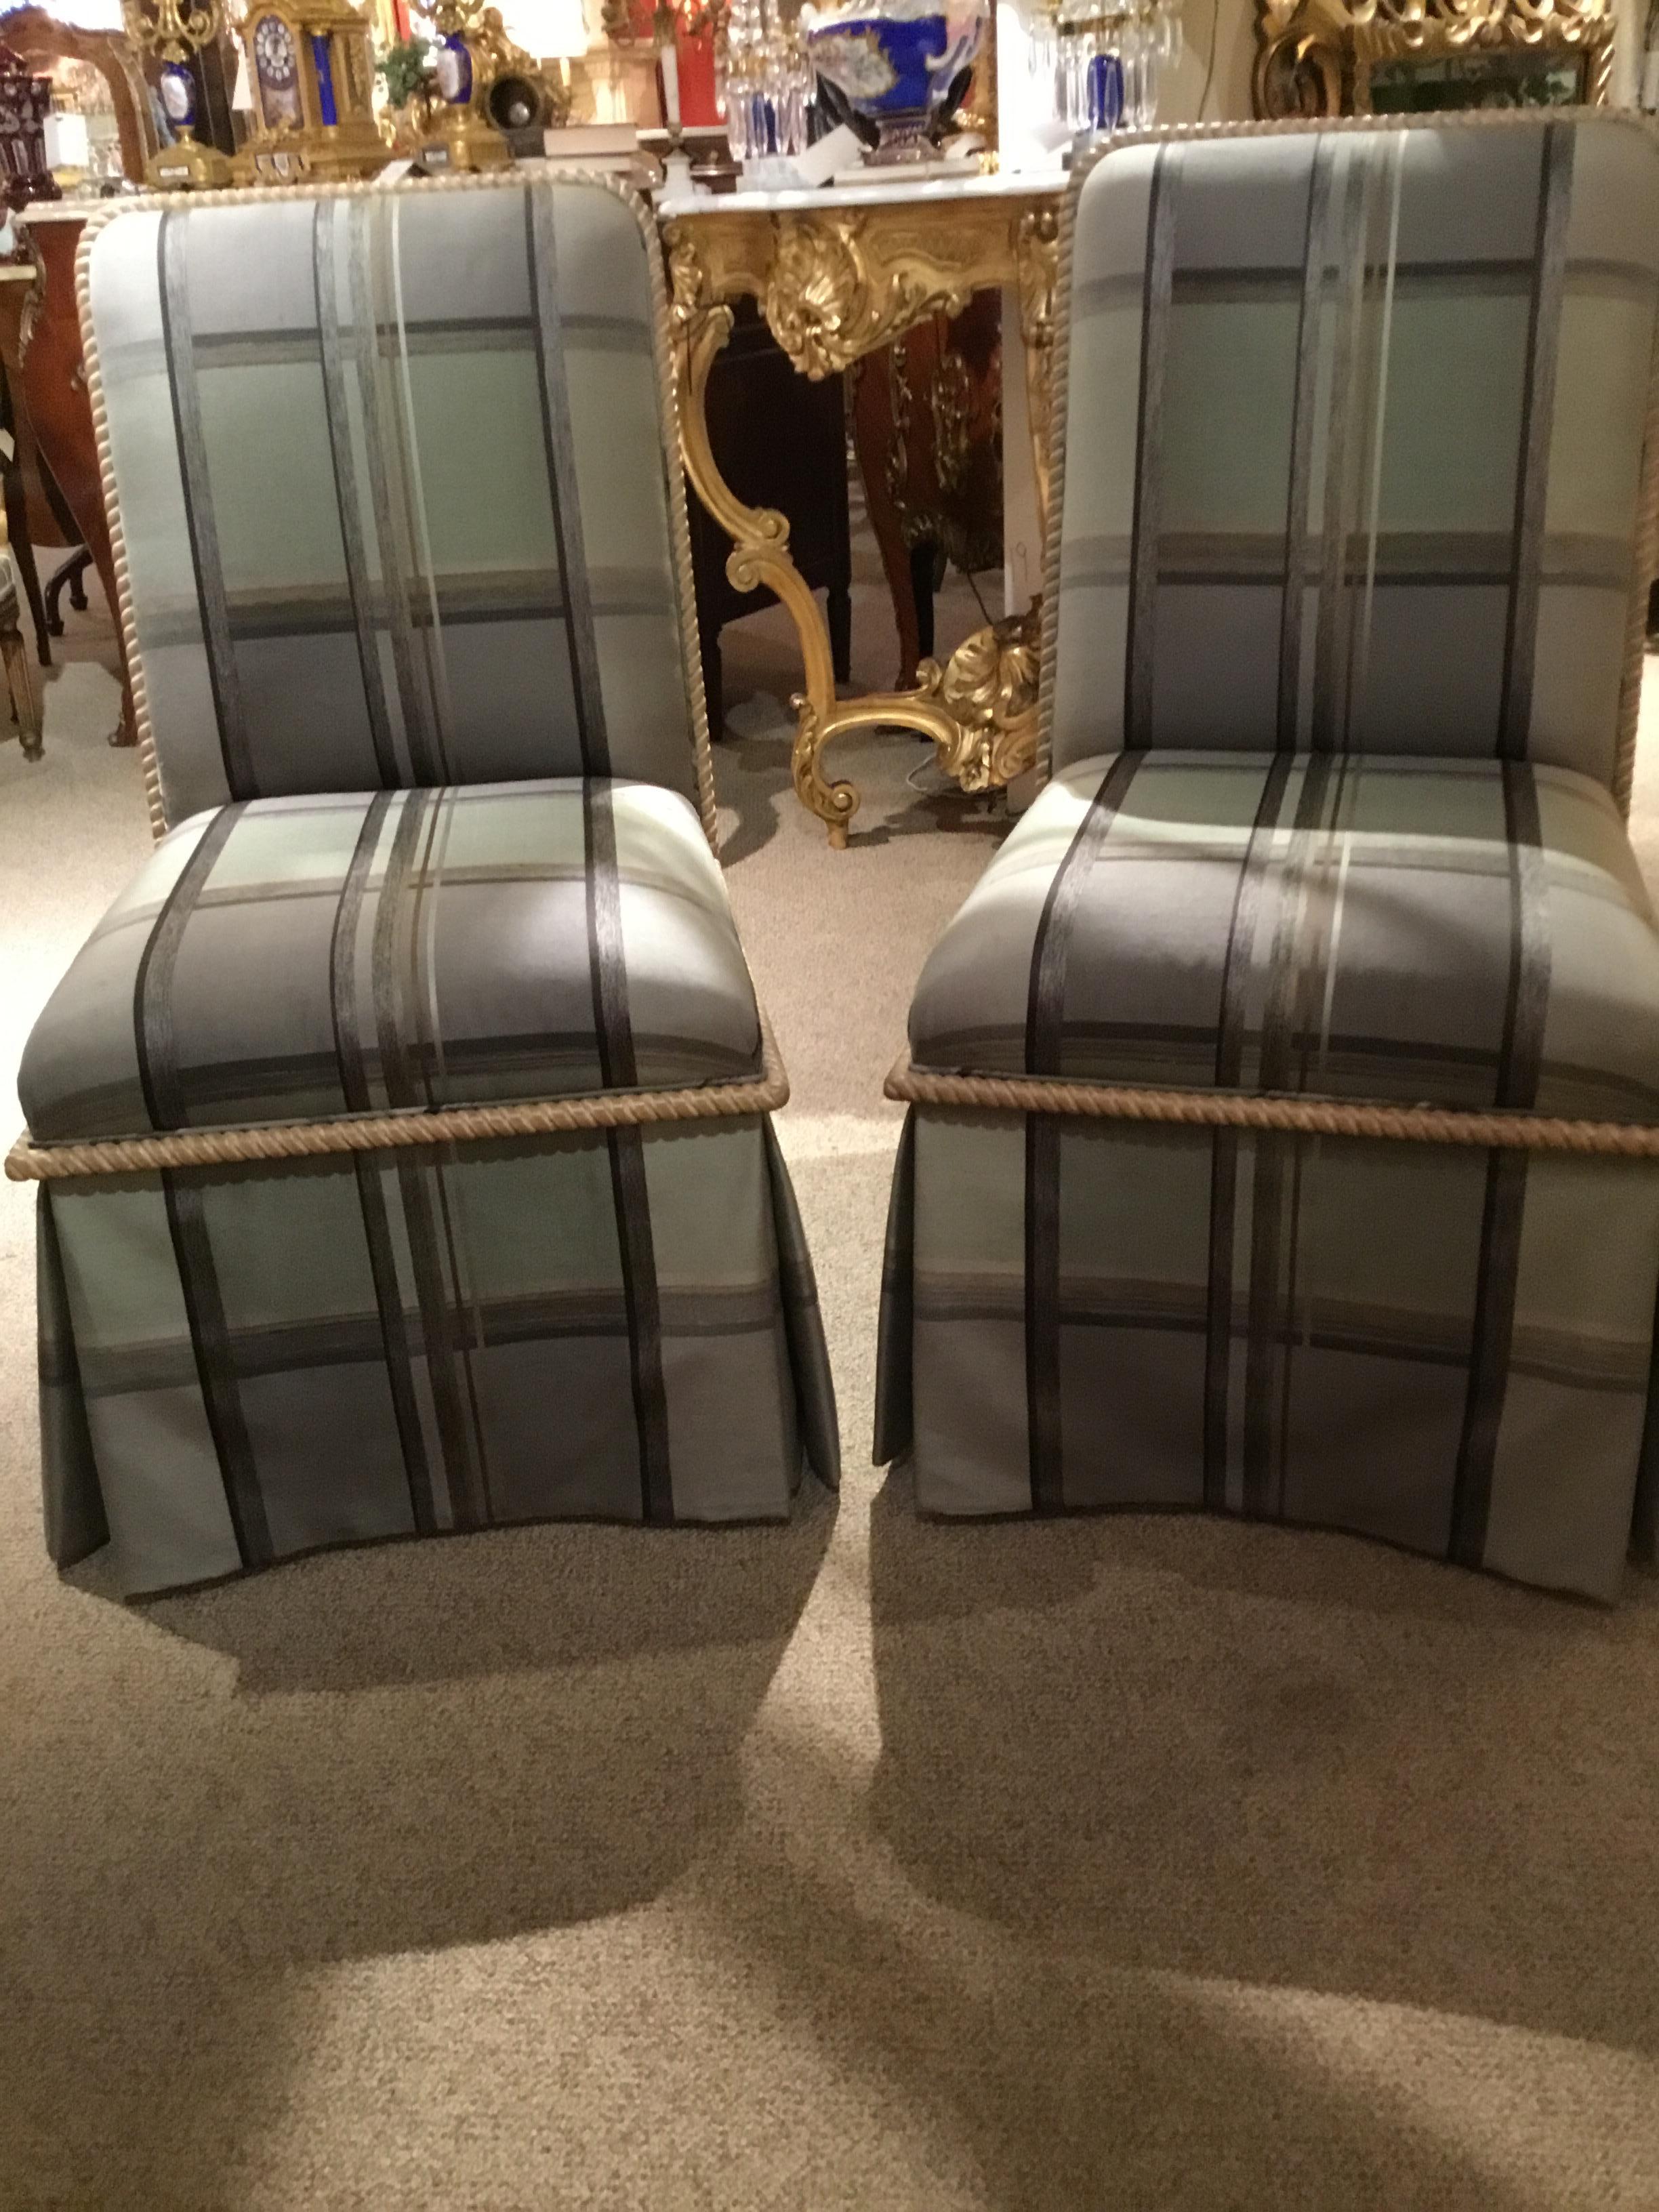 Chaises de salle à manger en soie rembourrée de haute qualité, de couleur sarcelle

Tissu. Fabriqué sur mesure avec une garniture en bois blanchi.